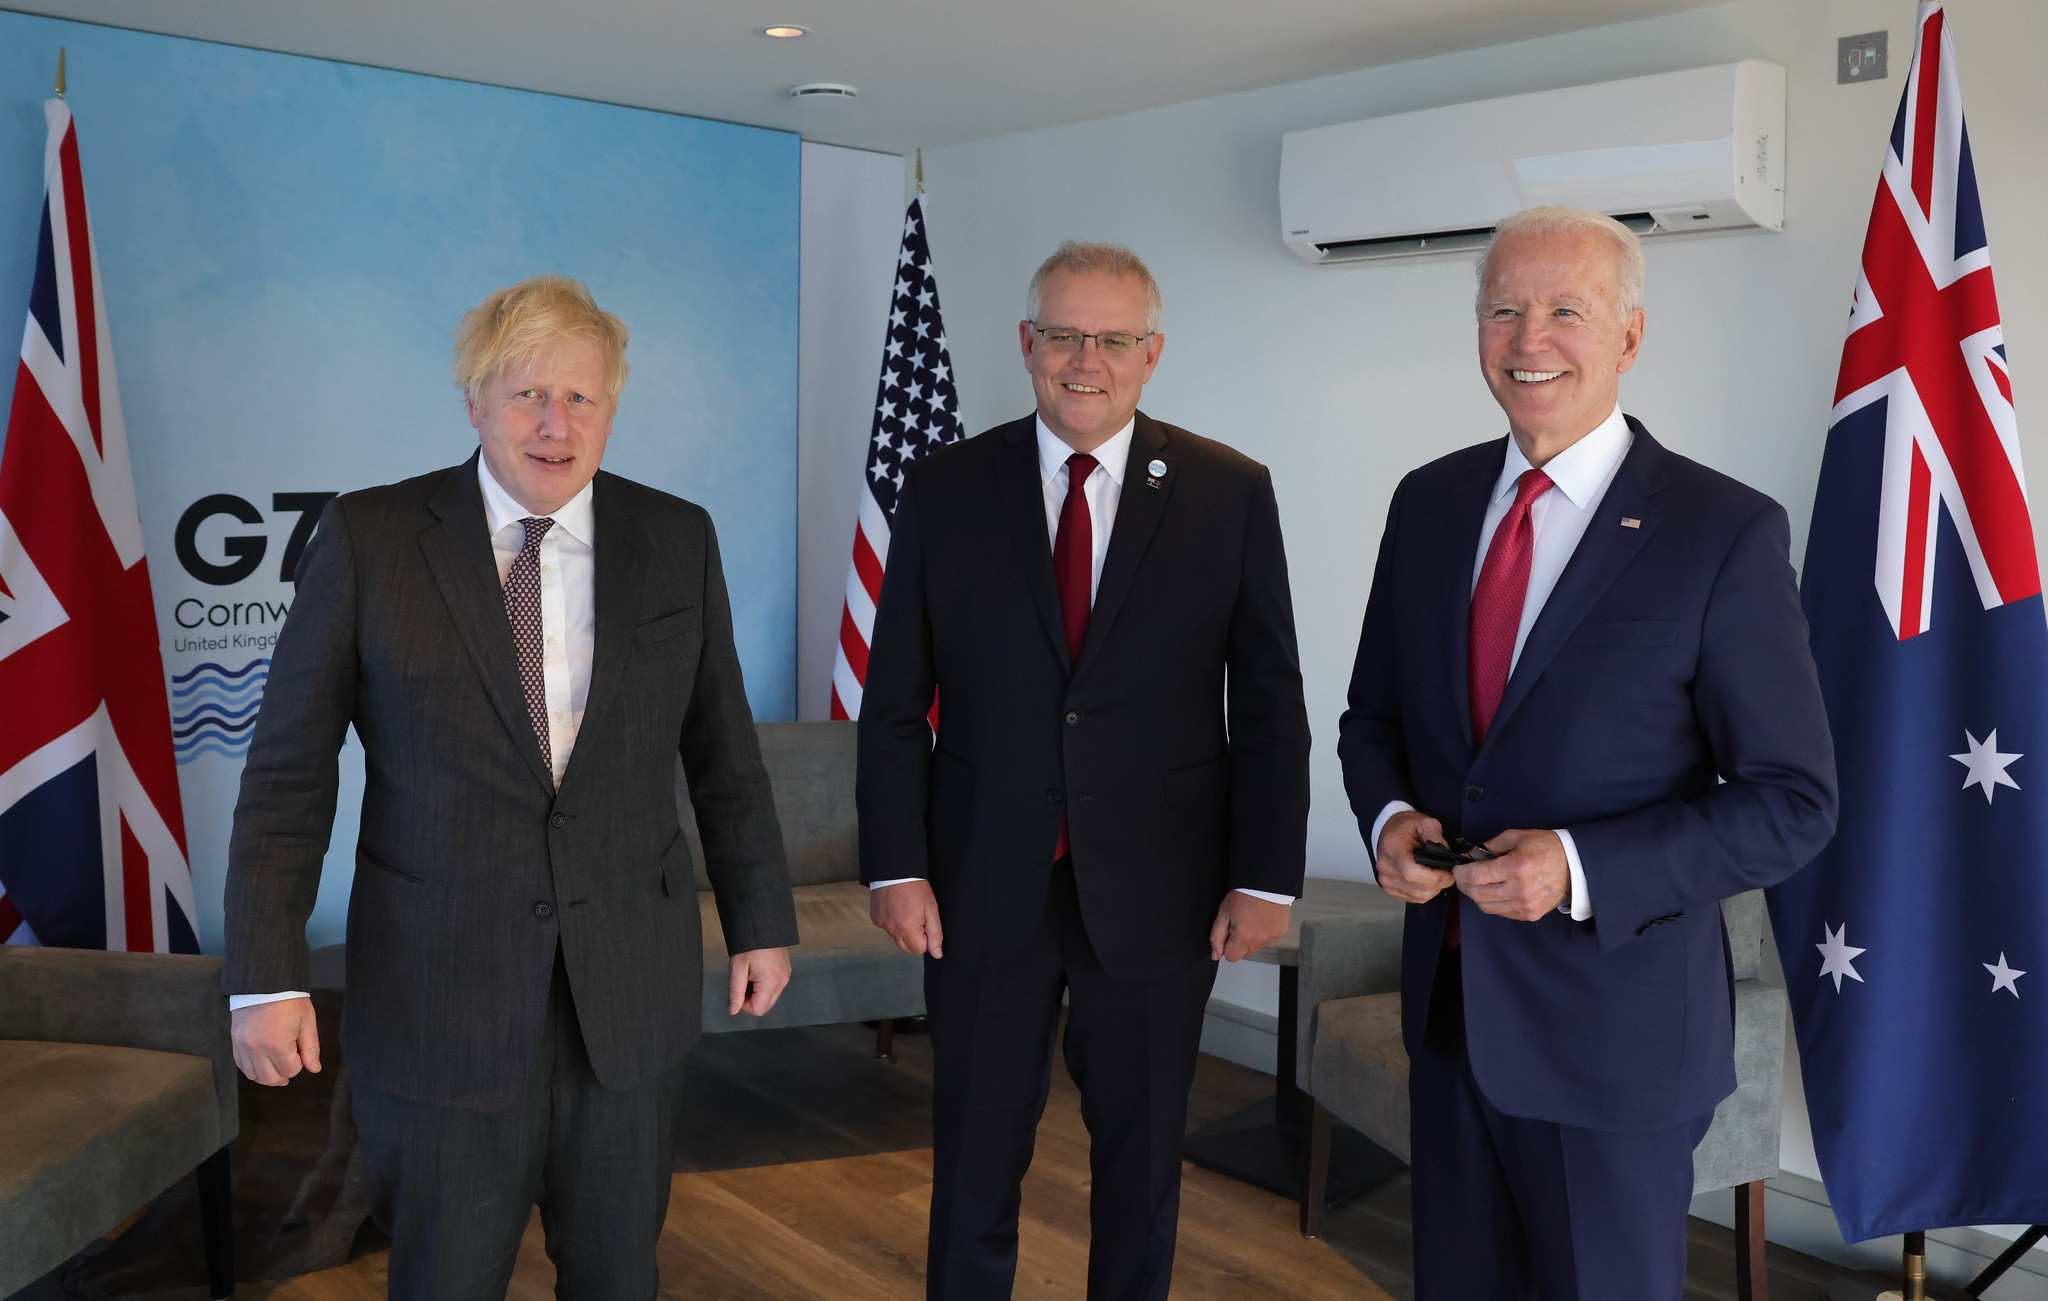 Boris Johnson brit, Scott Morrison ausztrál miniszterelnök és Joe Biden amerikai elnök még a G7-es csúcson 2021 júniusában a nagy-britanniai Cornwallban.